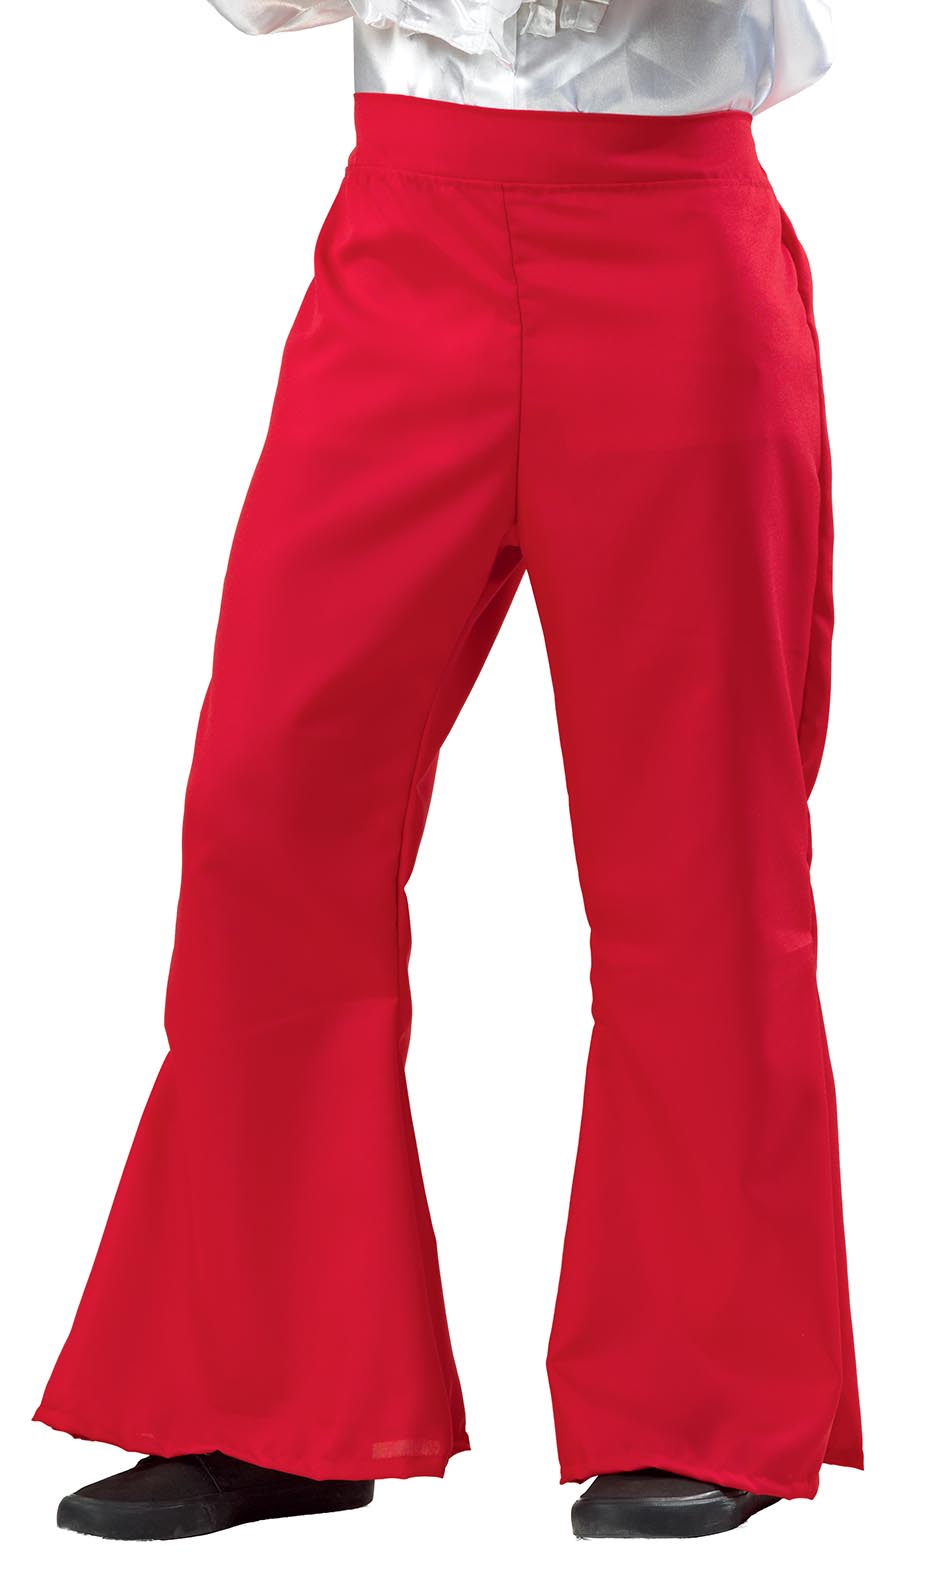 Αποκριάτικη στολή DISCO παντελόνι (κόκκινο) FF719